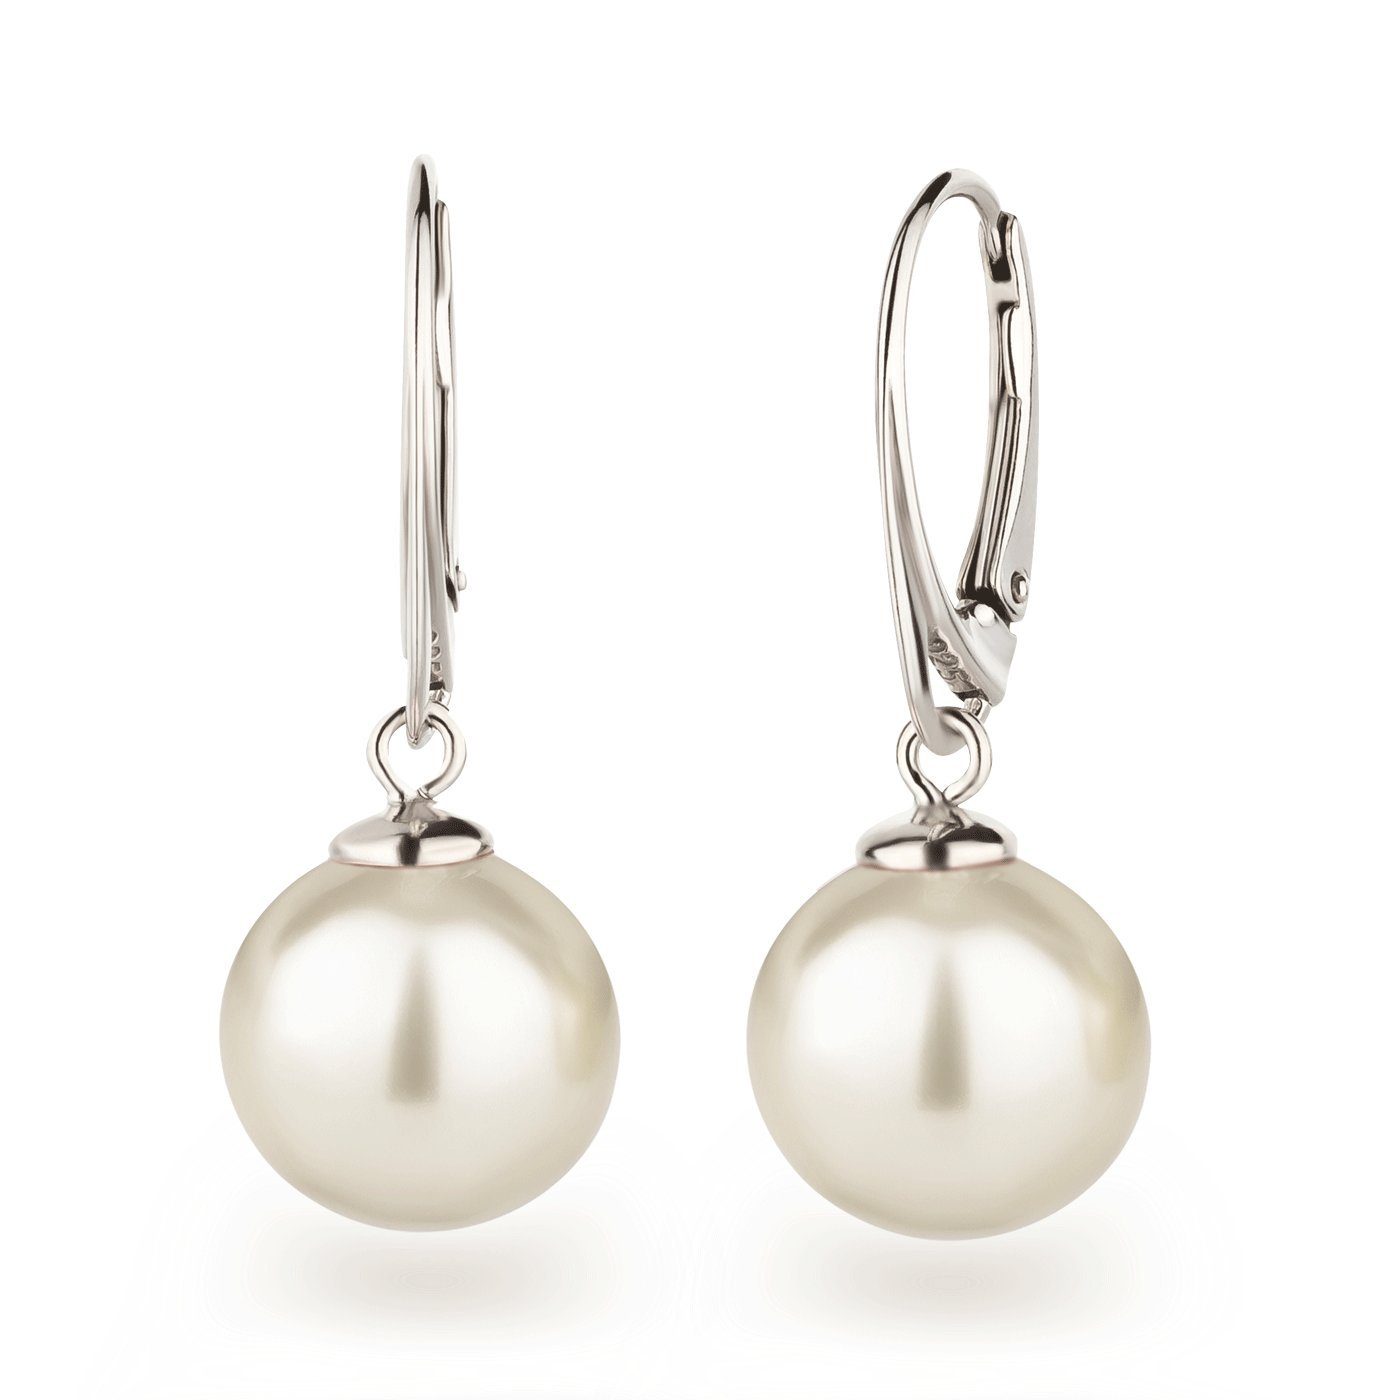 Schöner-SD Paar Ohrhänger mit Perle 12mm groß Perlenohrringe hängend, 925 Sterling Silber, Hänger